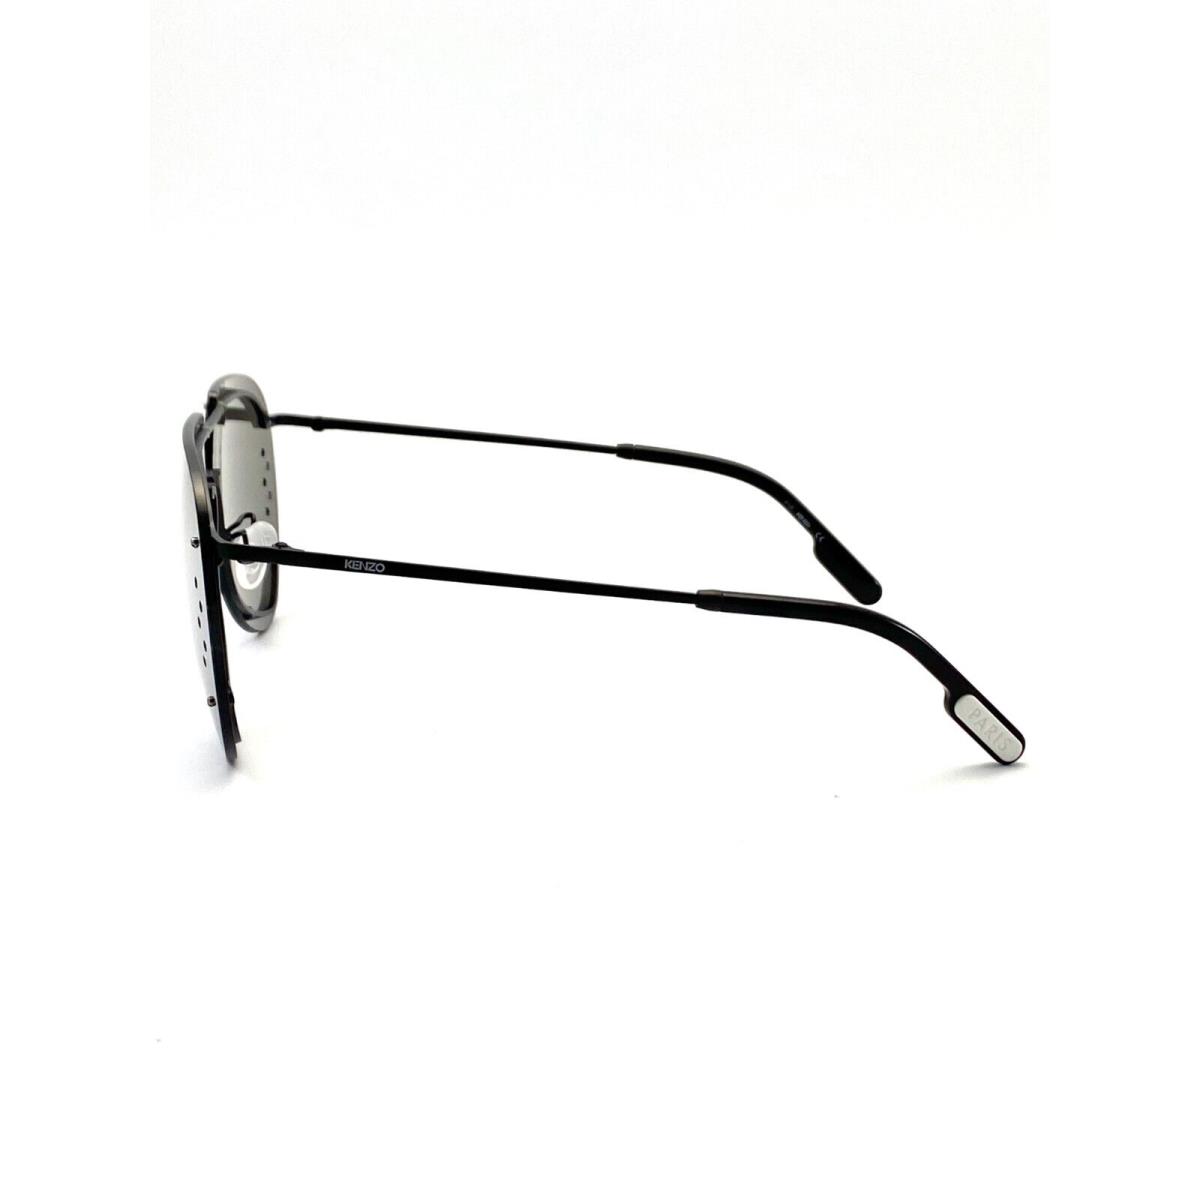 Kenzo sunglasses  - Black Frame, Silver Lens